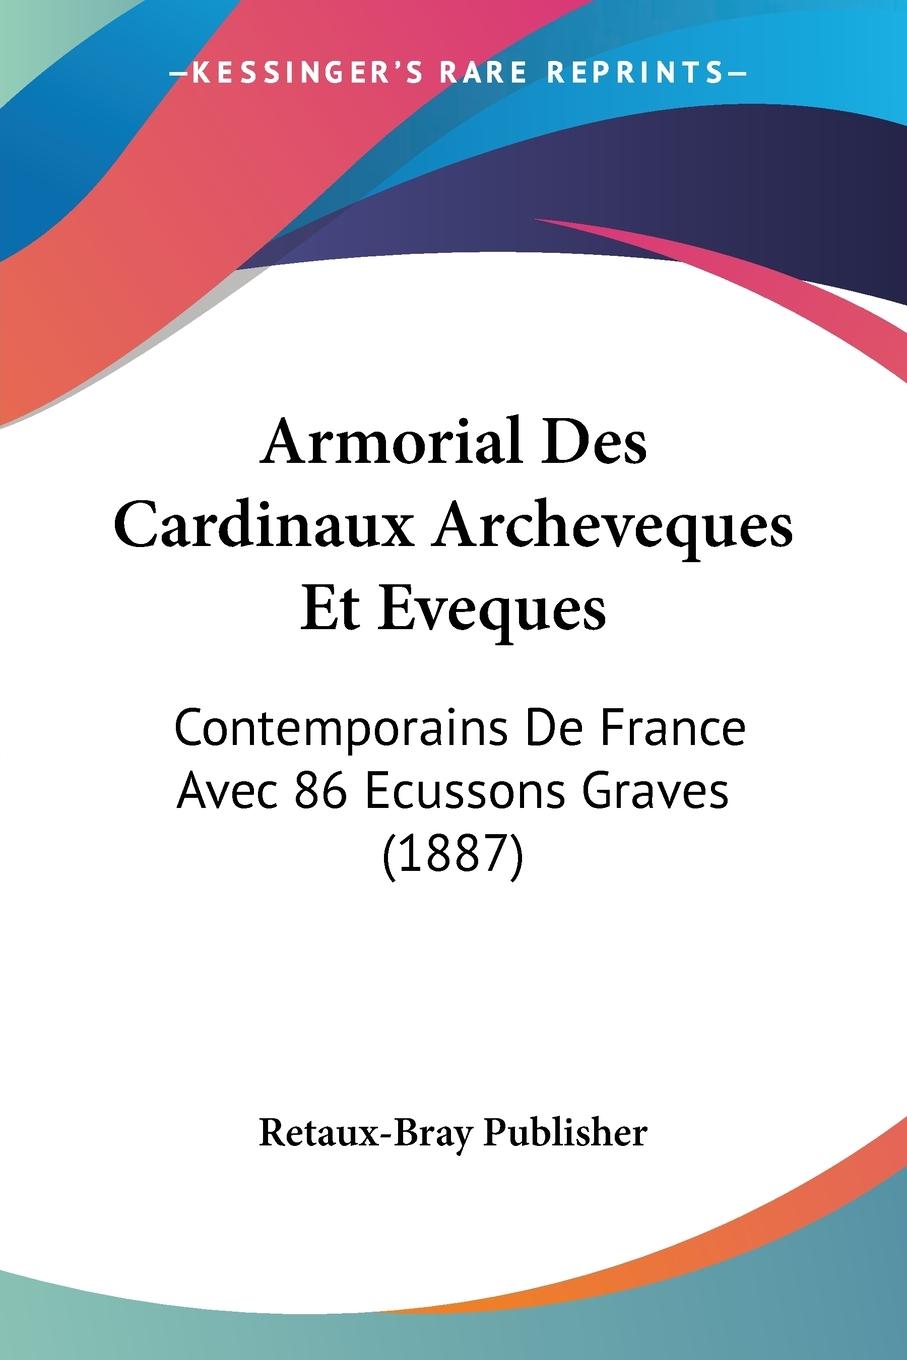 Armorial Des Cardinaux Archeveques Et Eveques: Contemporains De France Avec 86 Ecussons Graves (1887)